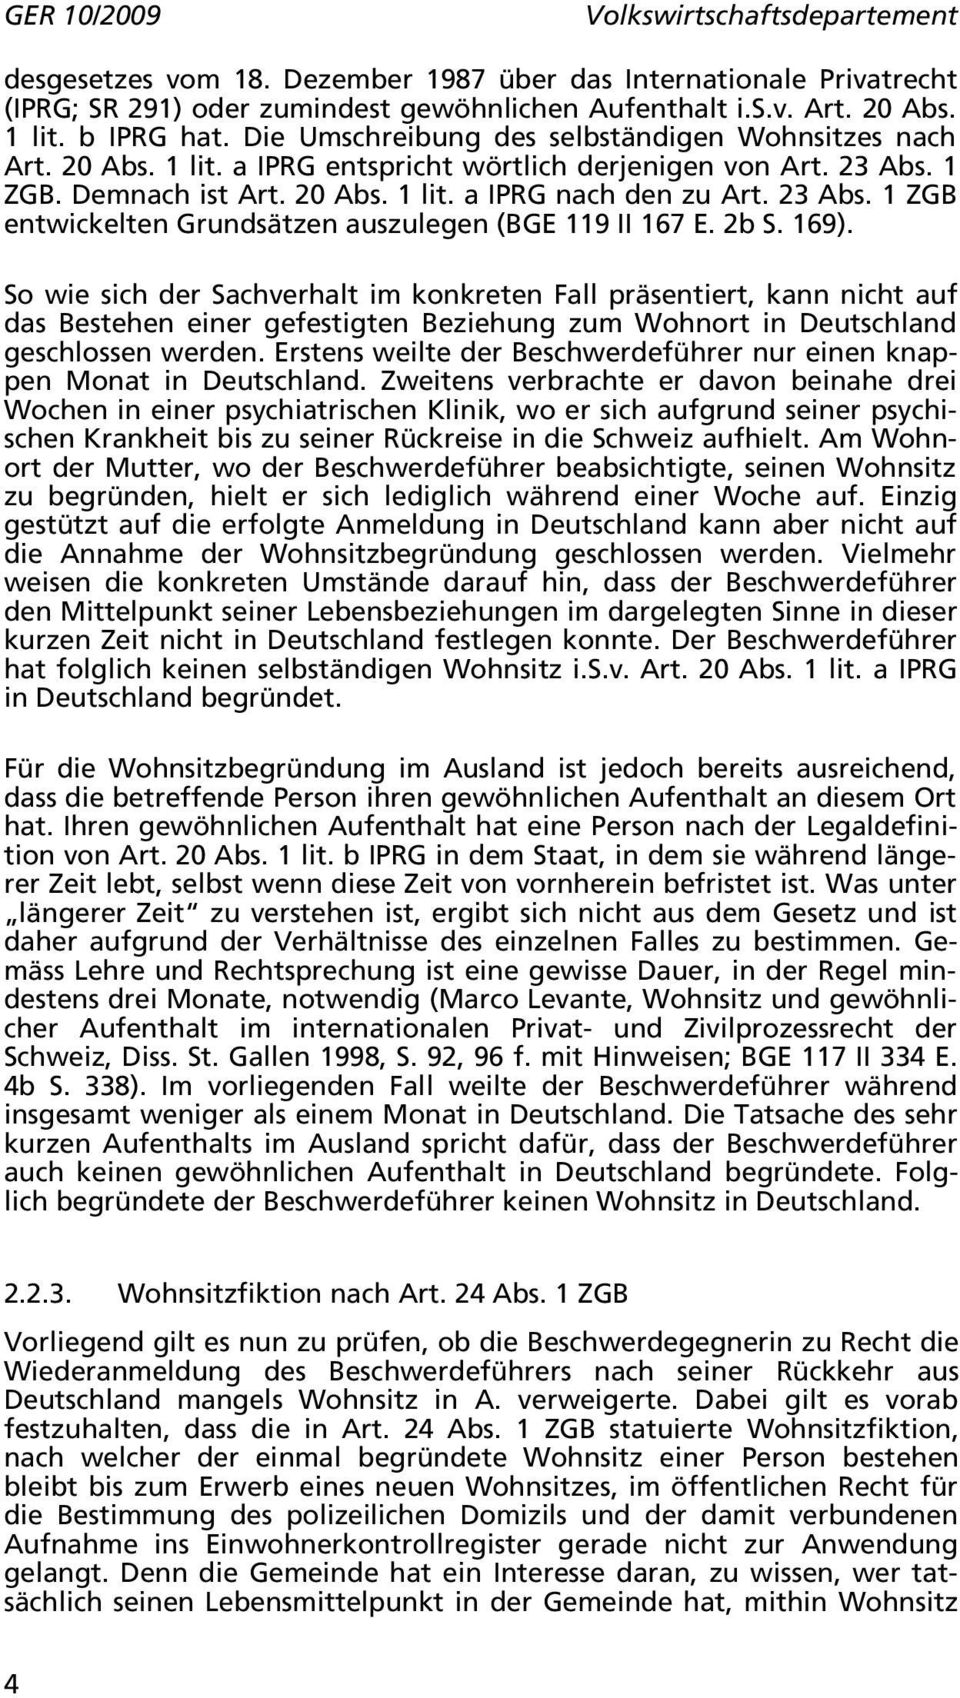 2b S. 169). So wie sich der Sachverhalt im konkreten Fall präsentiert, kann nicht auf das Bestehen einer gefestigten Beziehung zum Wohnort in Deutschland geschlossen werden.